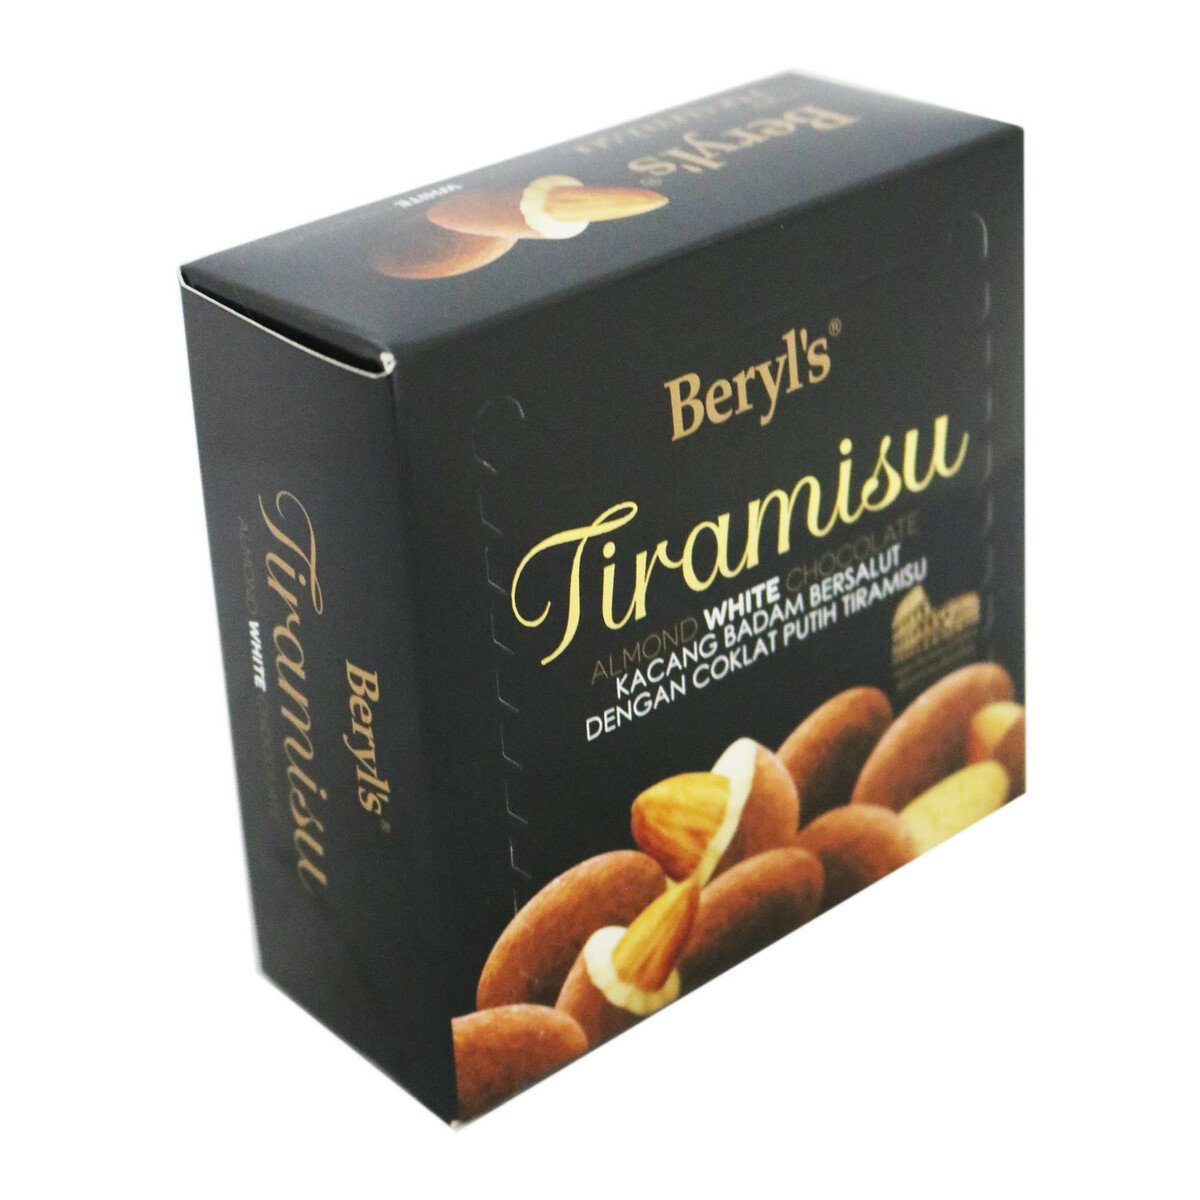 Beryls Tiramisu Almond White Chocolate 65g